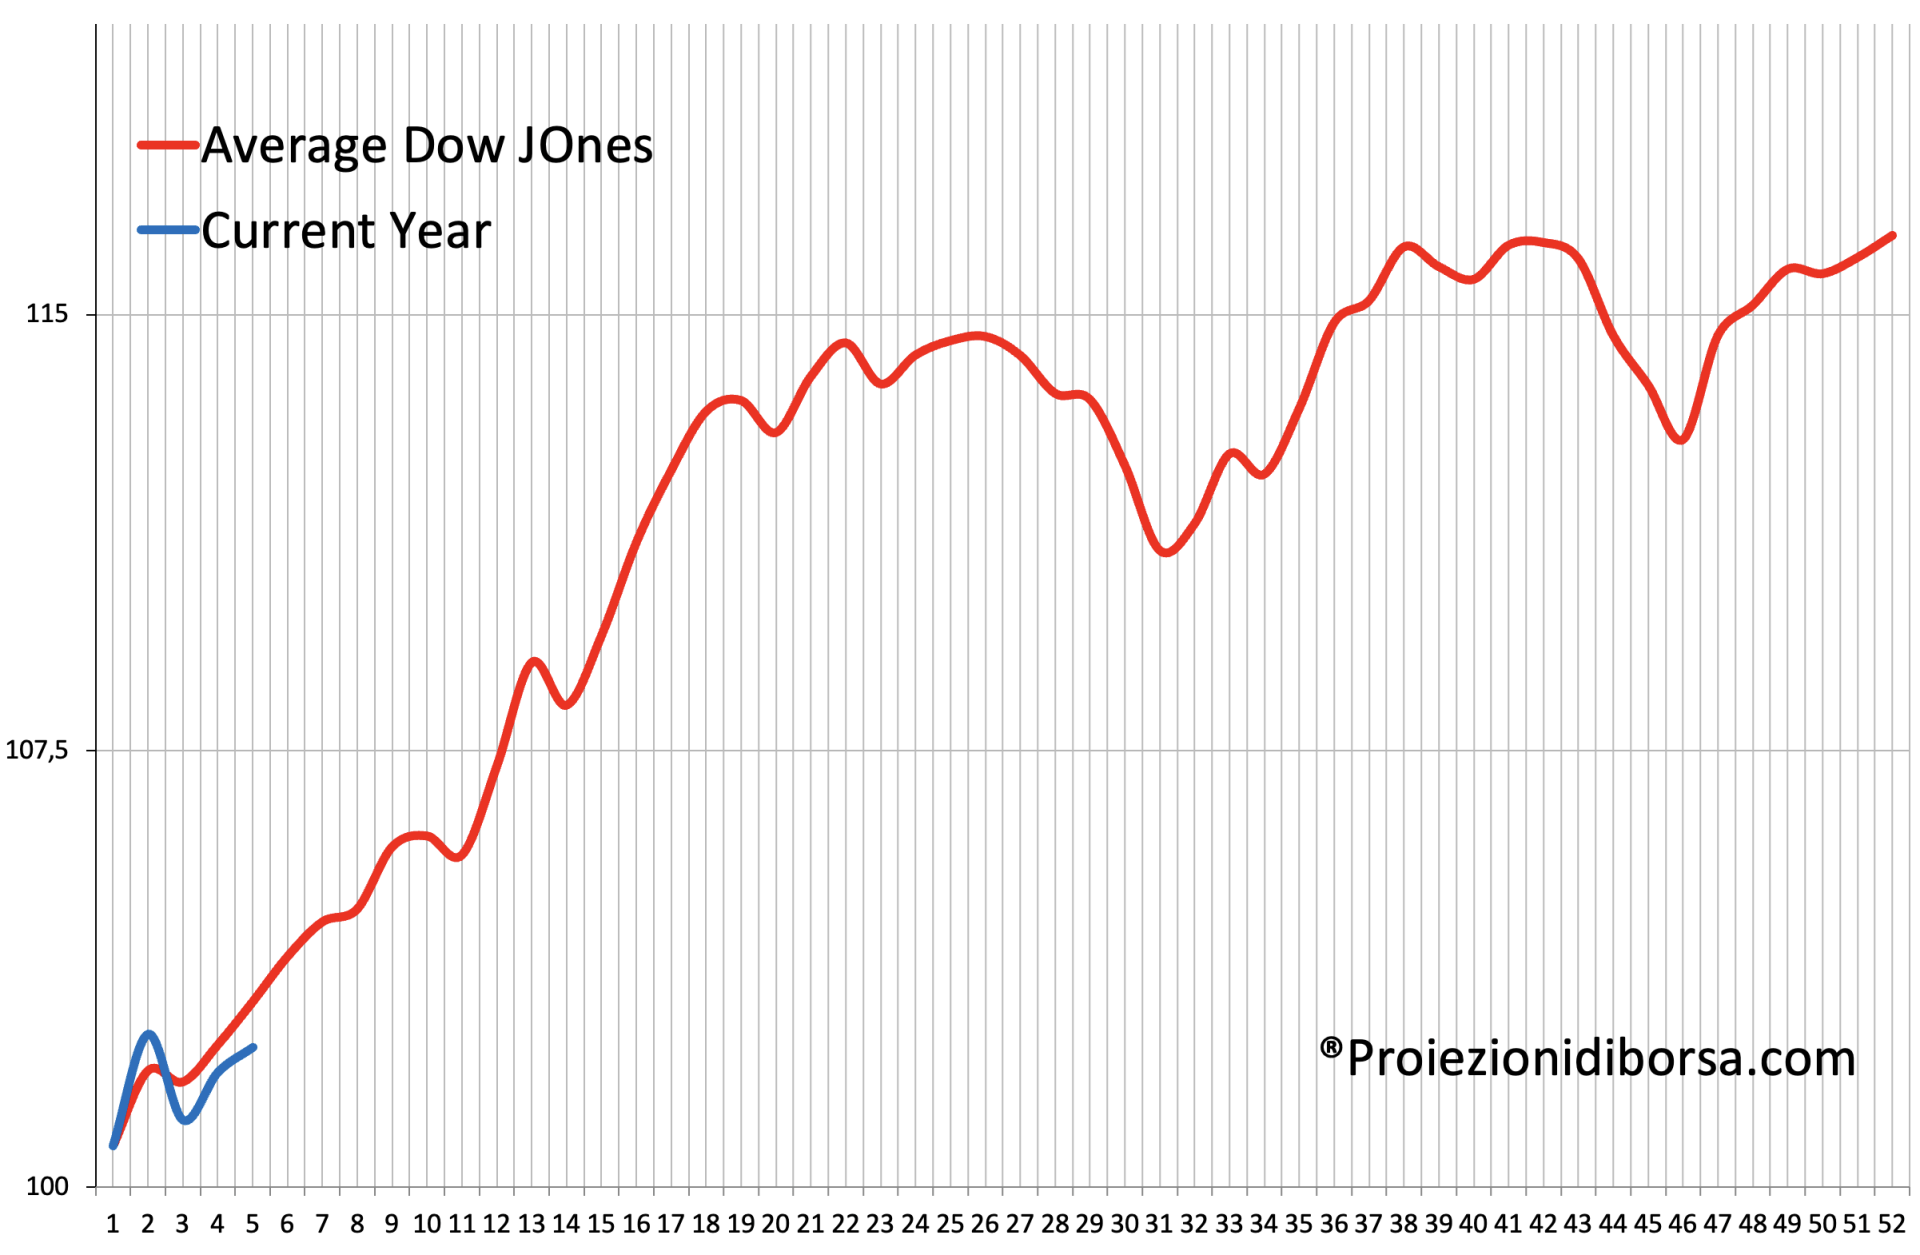 Frattale previsionale per il 2023. La linea rossa rappresenta l'andamento del Dow Jones sulla base delle serie storiche, la linea blu l'andamento reale per l'anno 2023